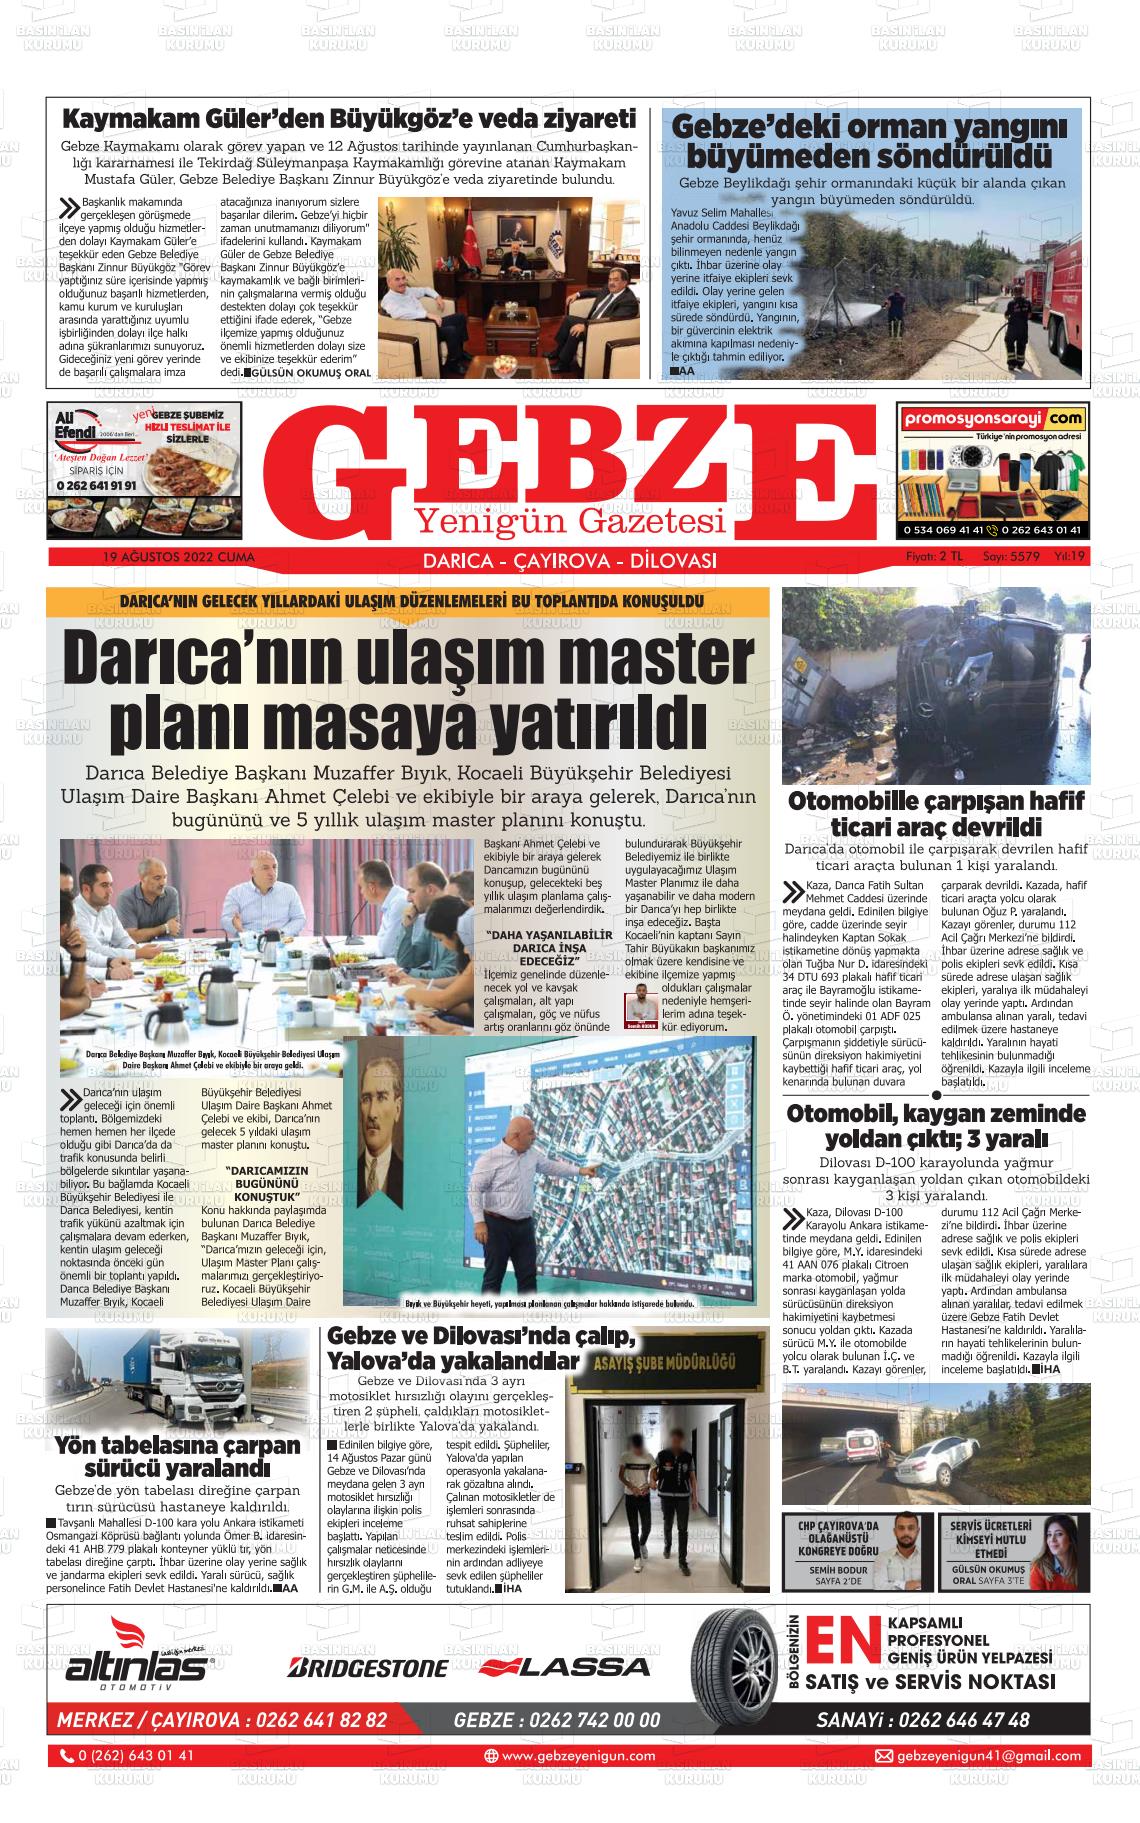 19 Ağustos 2022 Gebze Yenigün Gazete Manşeti